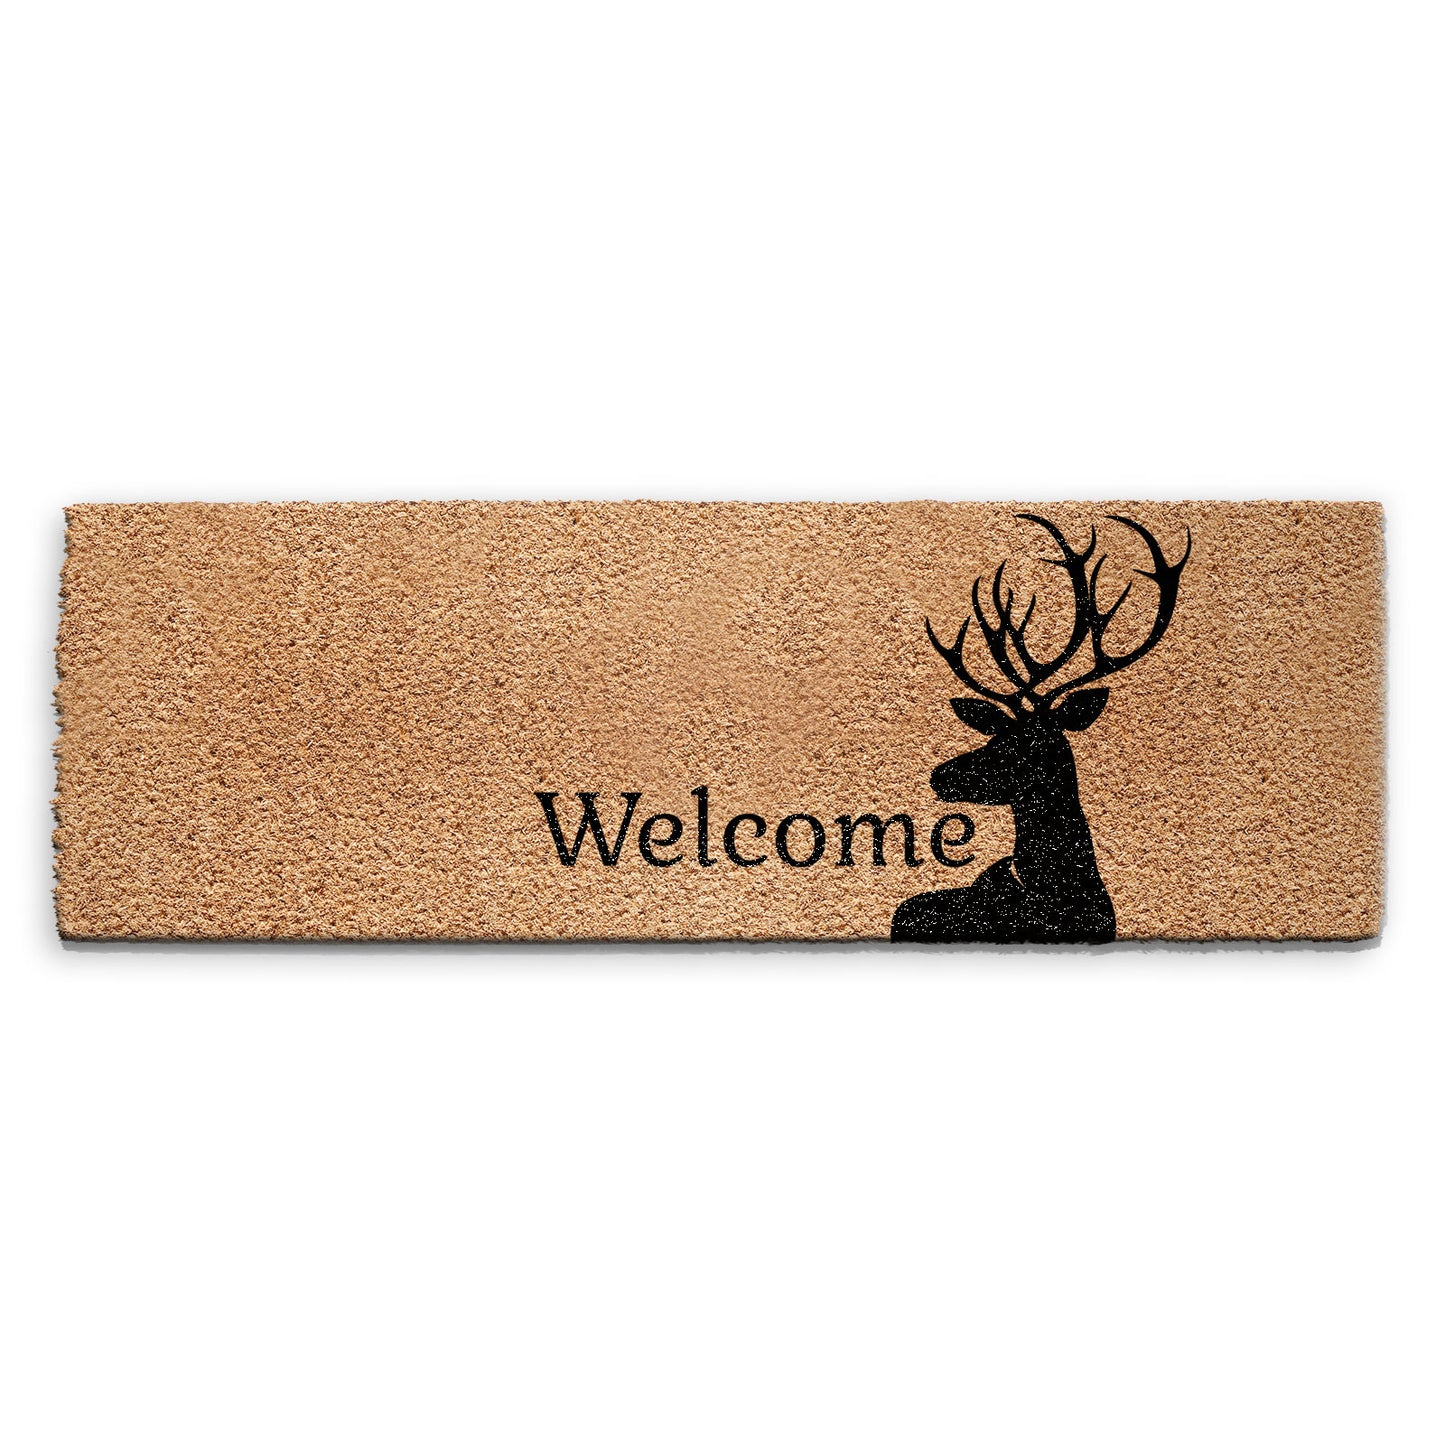 Coir Doormat - Black Stag Welcome